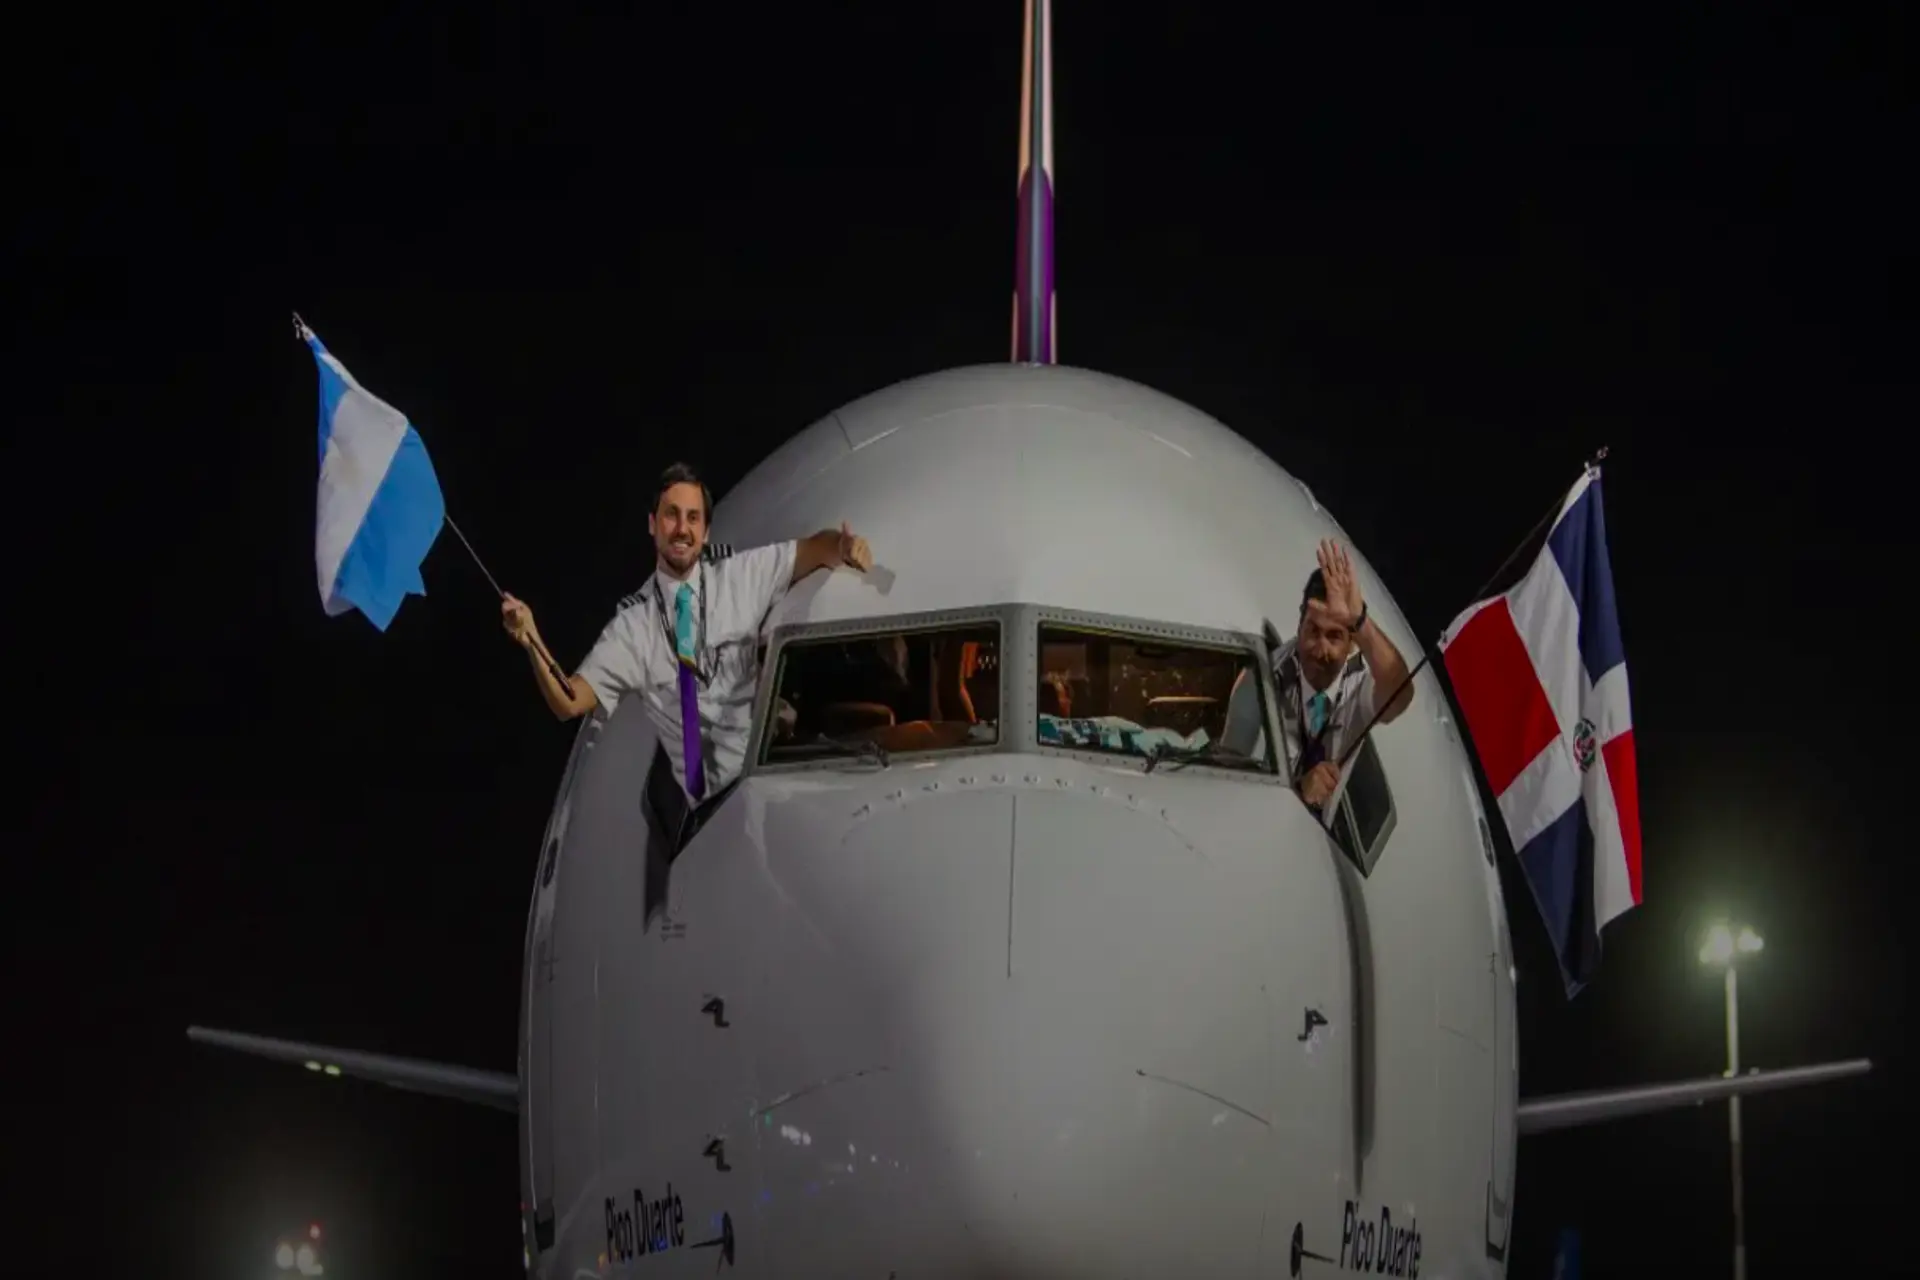 La aerolínea Dominicana de precios bajos Arajet llegó a la Argentina 